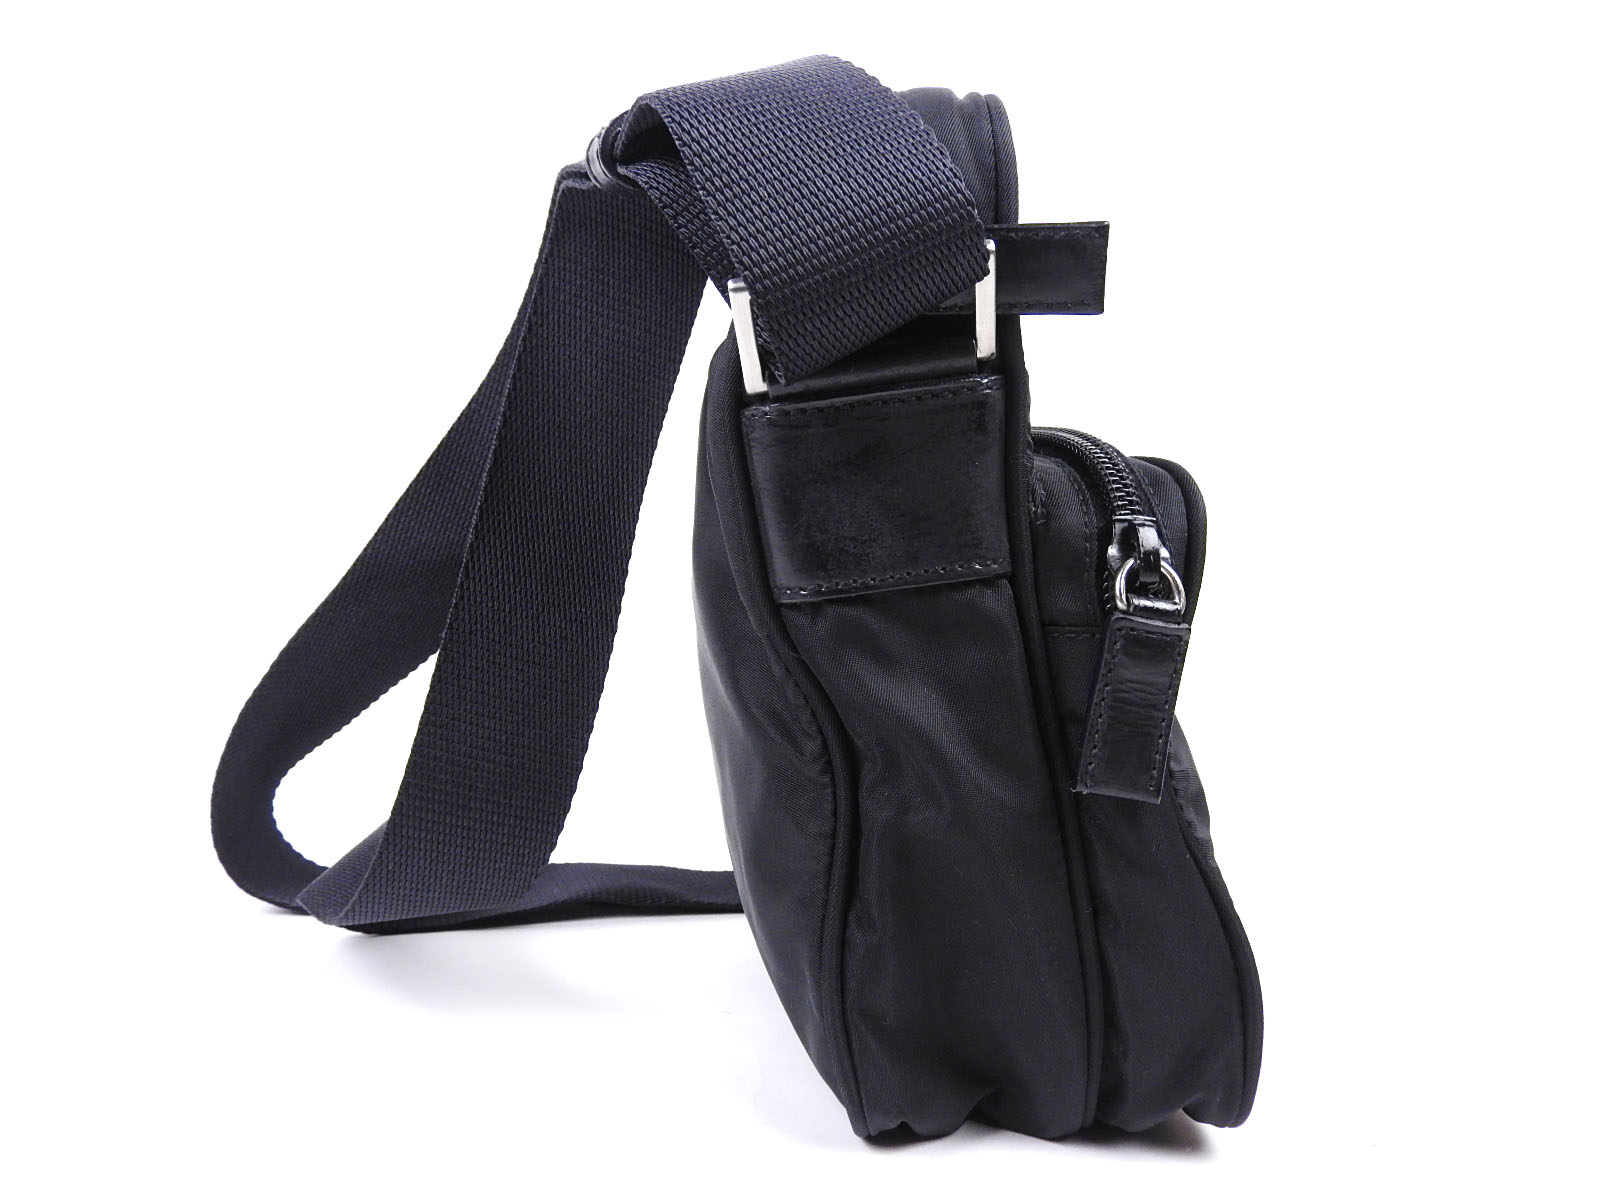 Auth PRADA VELA SPORT Nylon Crossbody Shoulder Bag Black NERO BT0169 A-4890 | eBay